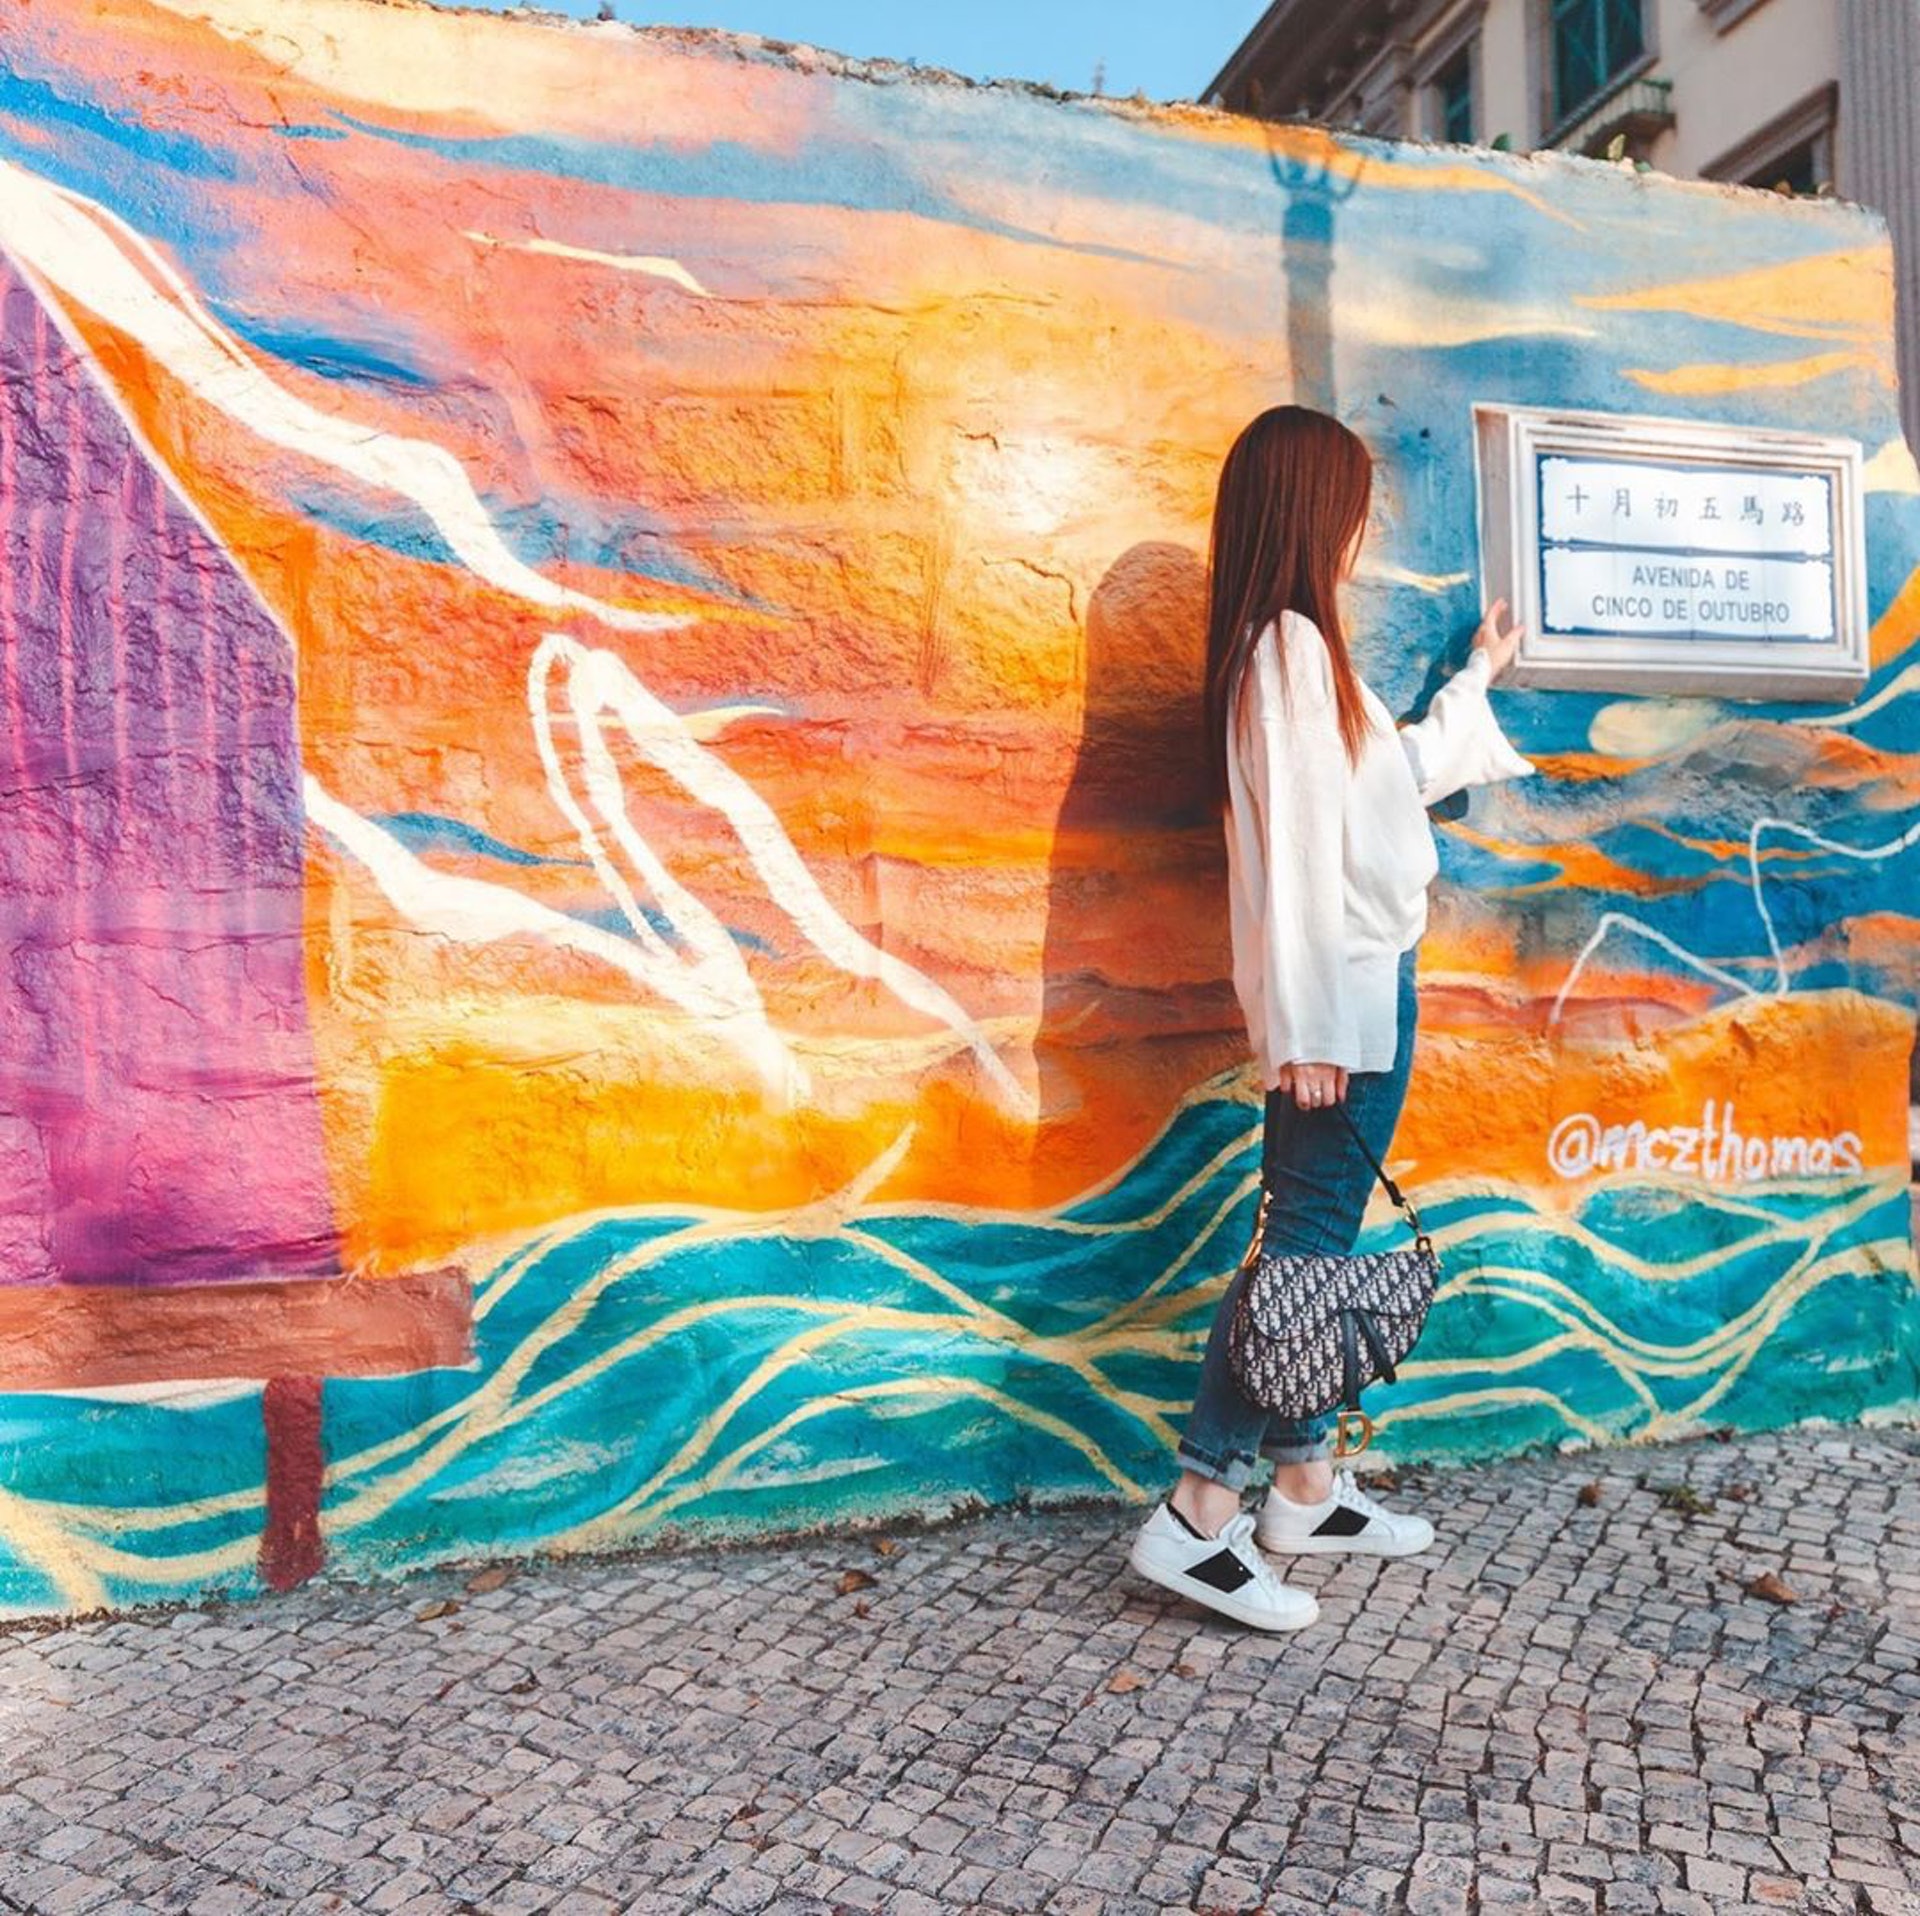 【3.1】十月初五馬路
於十月初五馬路附近遊走，會看到由多位本地及外地藝術家為風災過後美化而設計的塗鴉壁畫，色彩繽紛的外牆非常適合打卡。（Instagram@chesterrrrr）